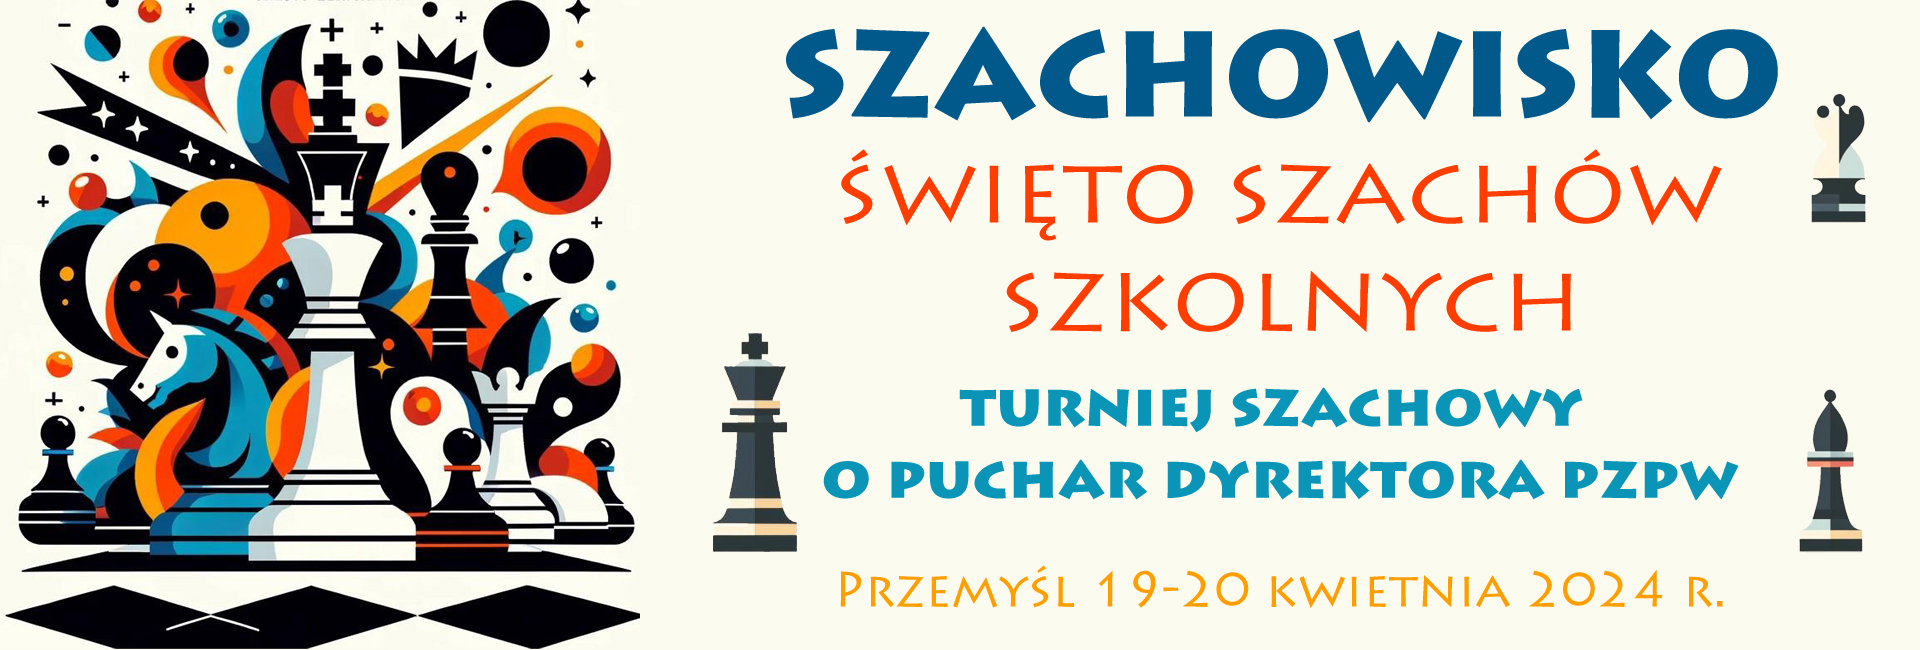 Szachowisko Święto szachow skzolnych, turniej szchowy o puchar Dyrektora PZPW, Przemyśl 1-20 kwietnia 2024 r.